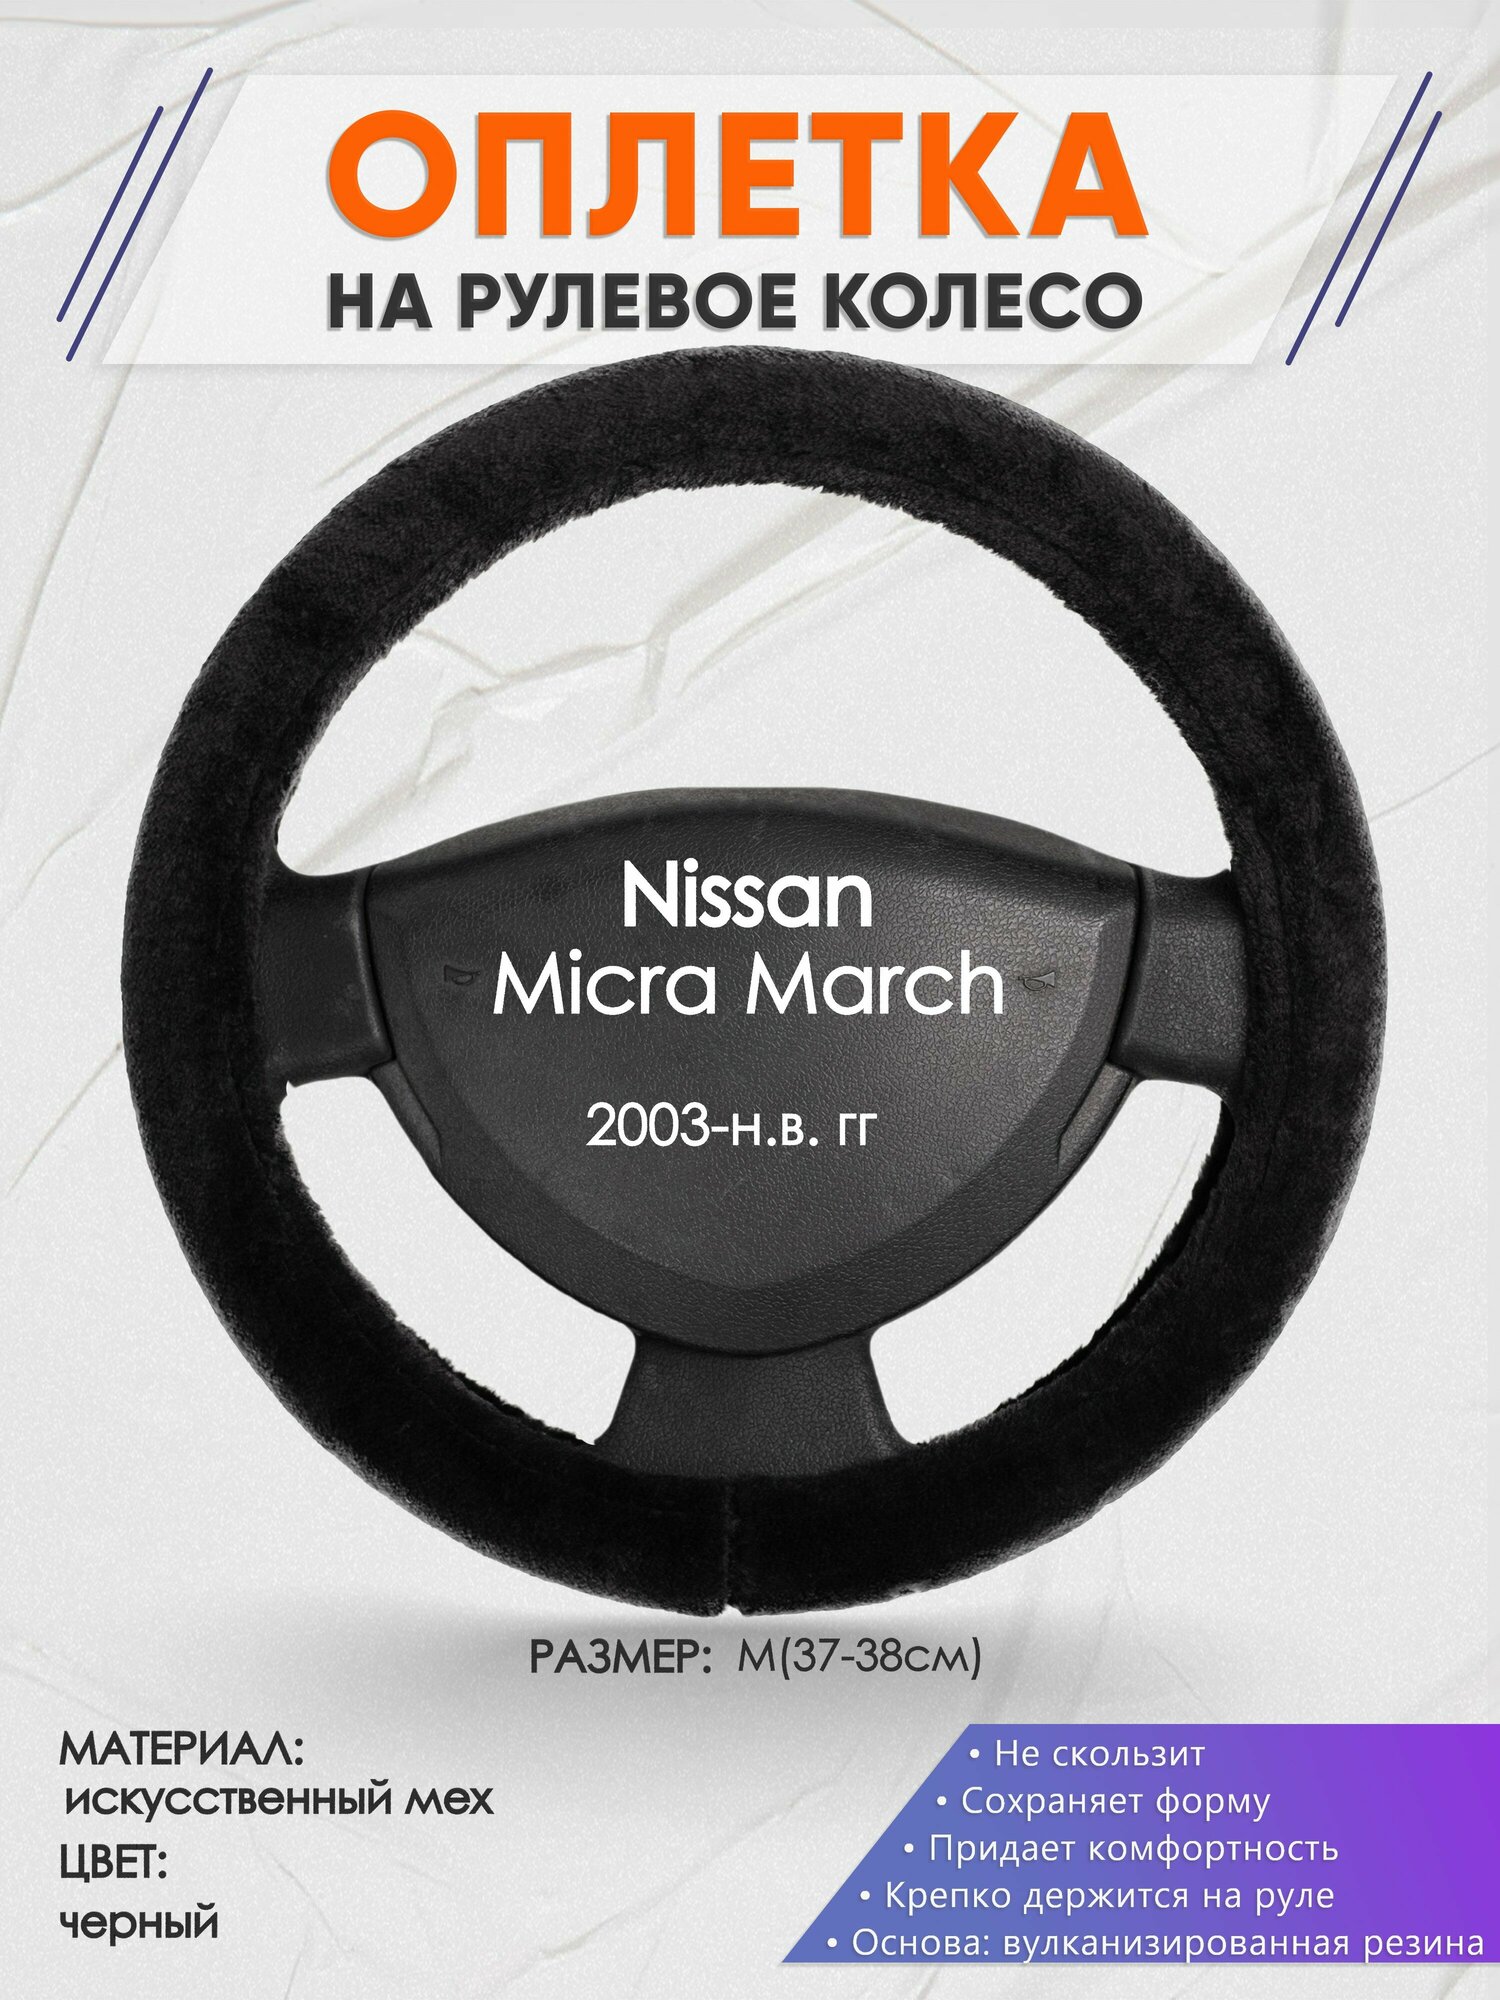 Оплетка на руль для Nissan Micra March(Ниссан Микра) 2003-н. в, M(37-38см), Искусственный мех 45